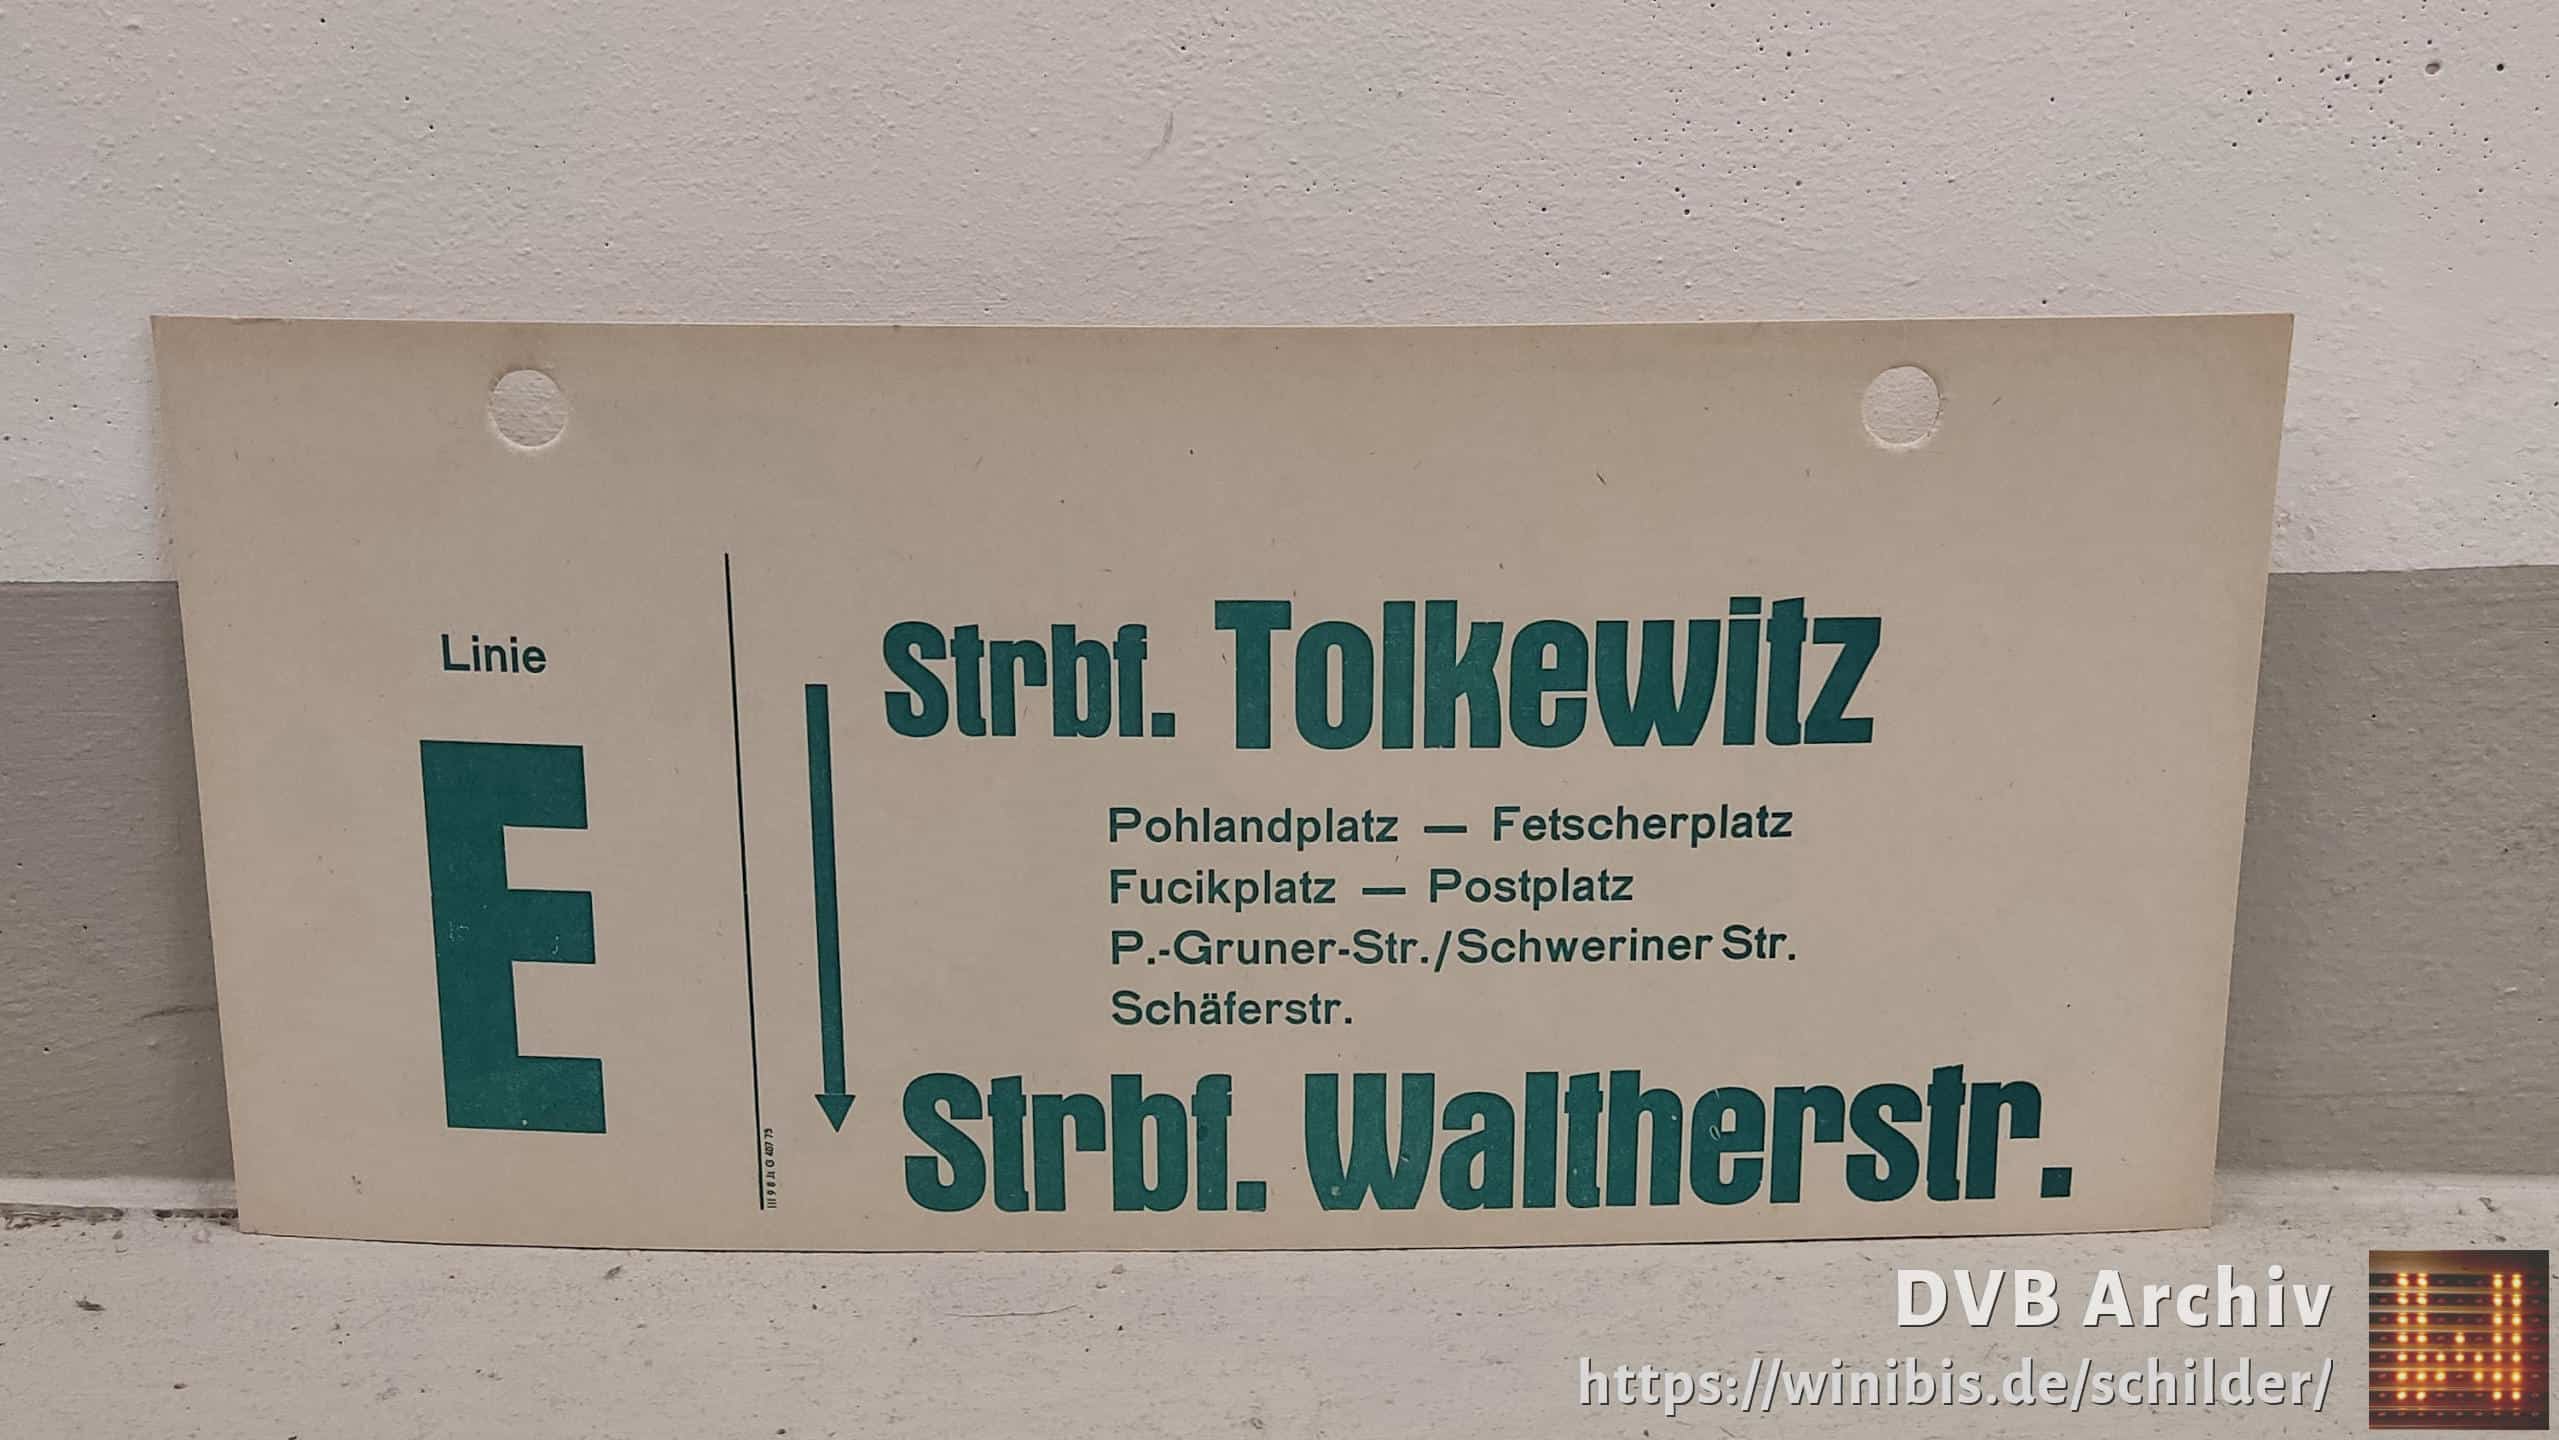 Linie E Strbf. Tolkewitz – Strbf. Walt­herstr.